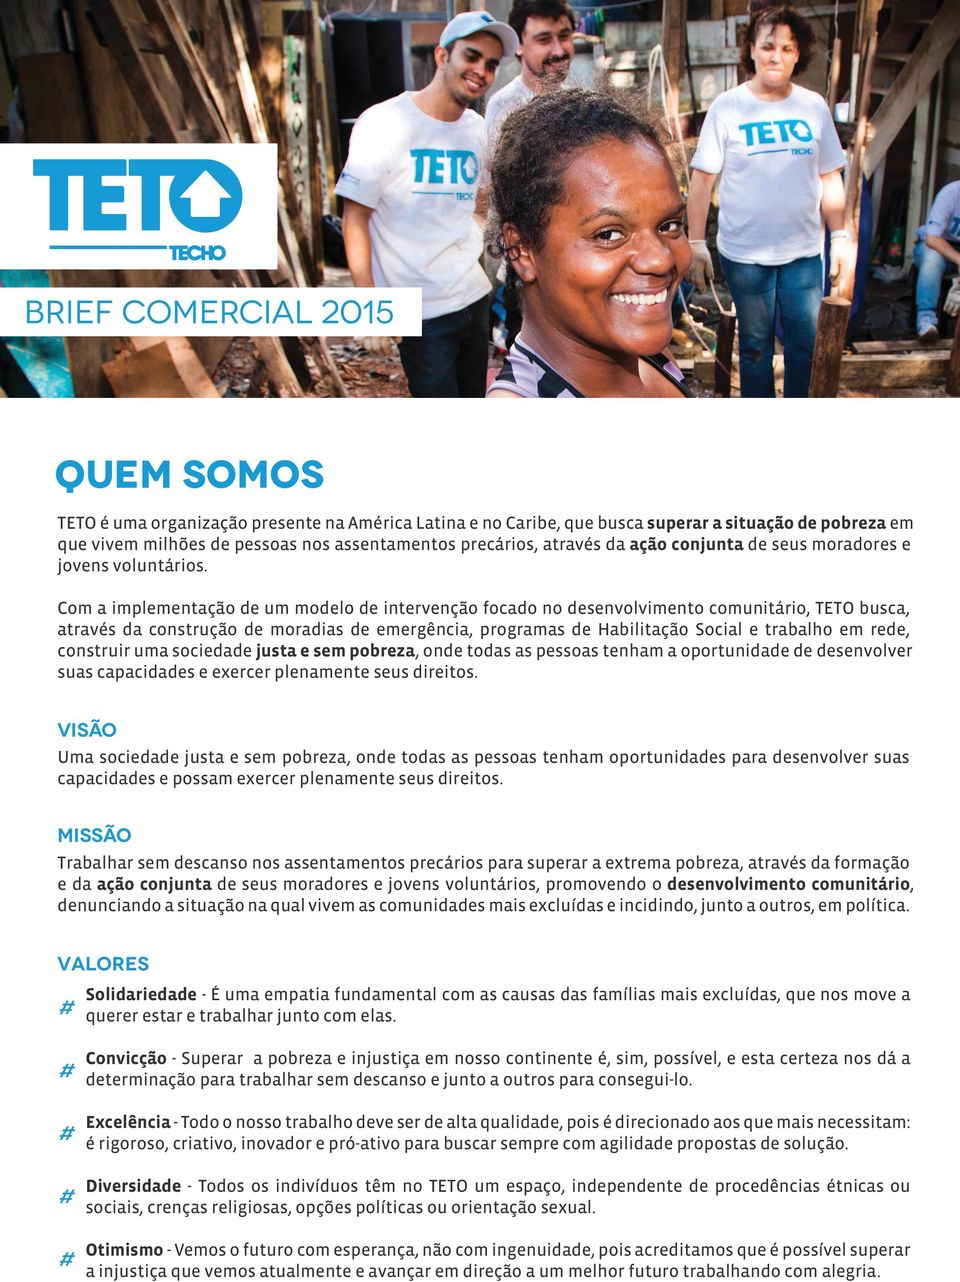 Com a implementação de um modelo de intervenção focado no desenvolvimento comunitário, TETO busca, através da construção de moradias de emergência, programas de Habilitação Social e trabalho em rede,